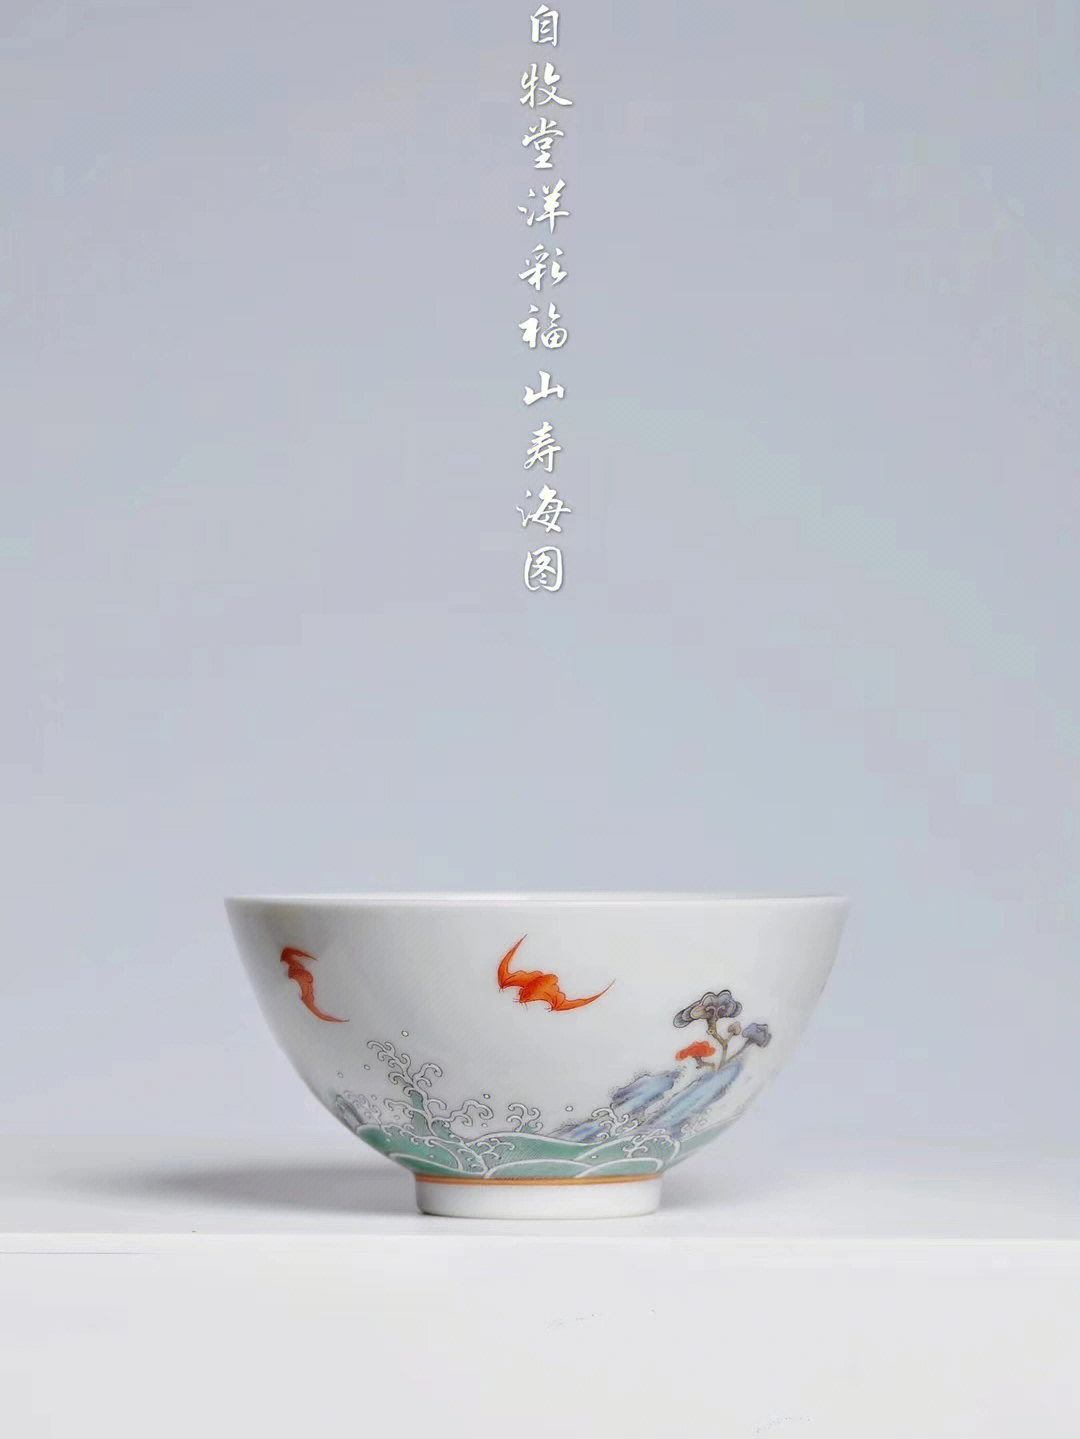 福山寿海的图案寓意图片